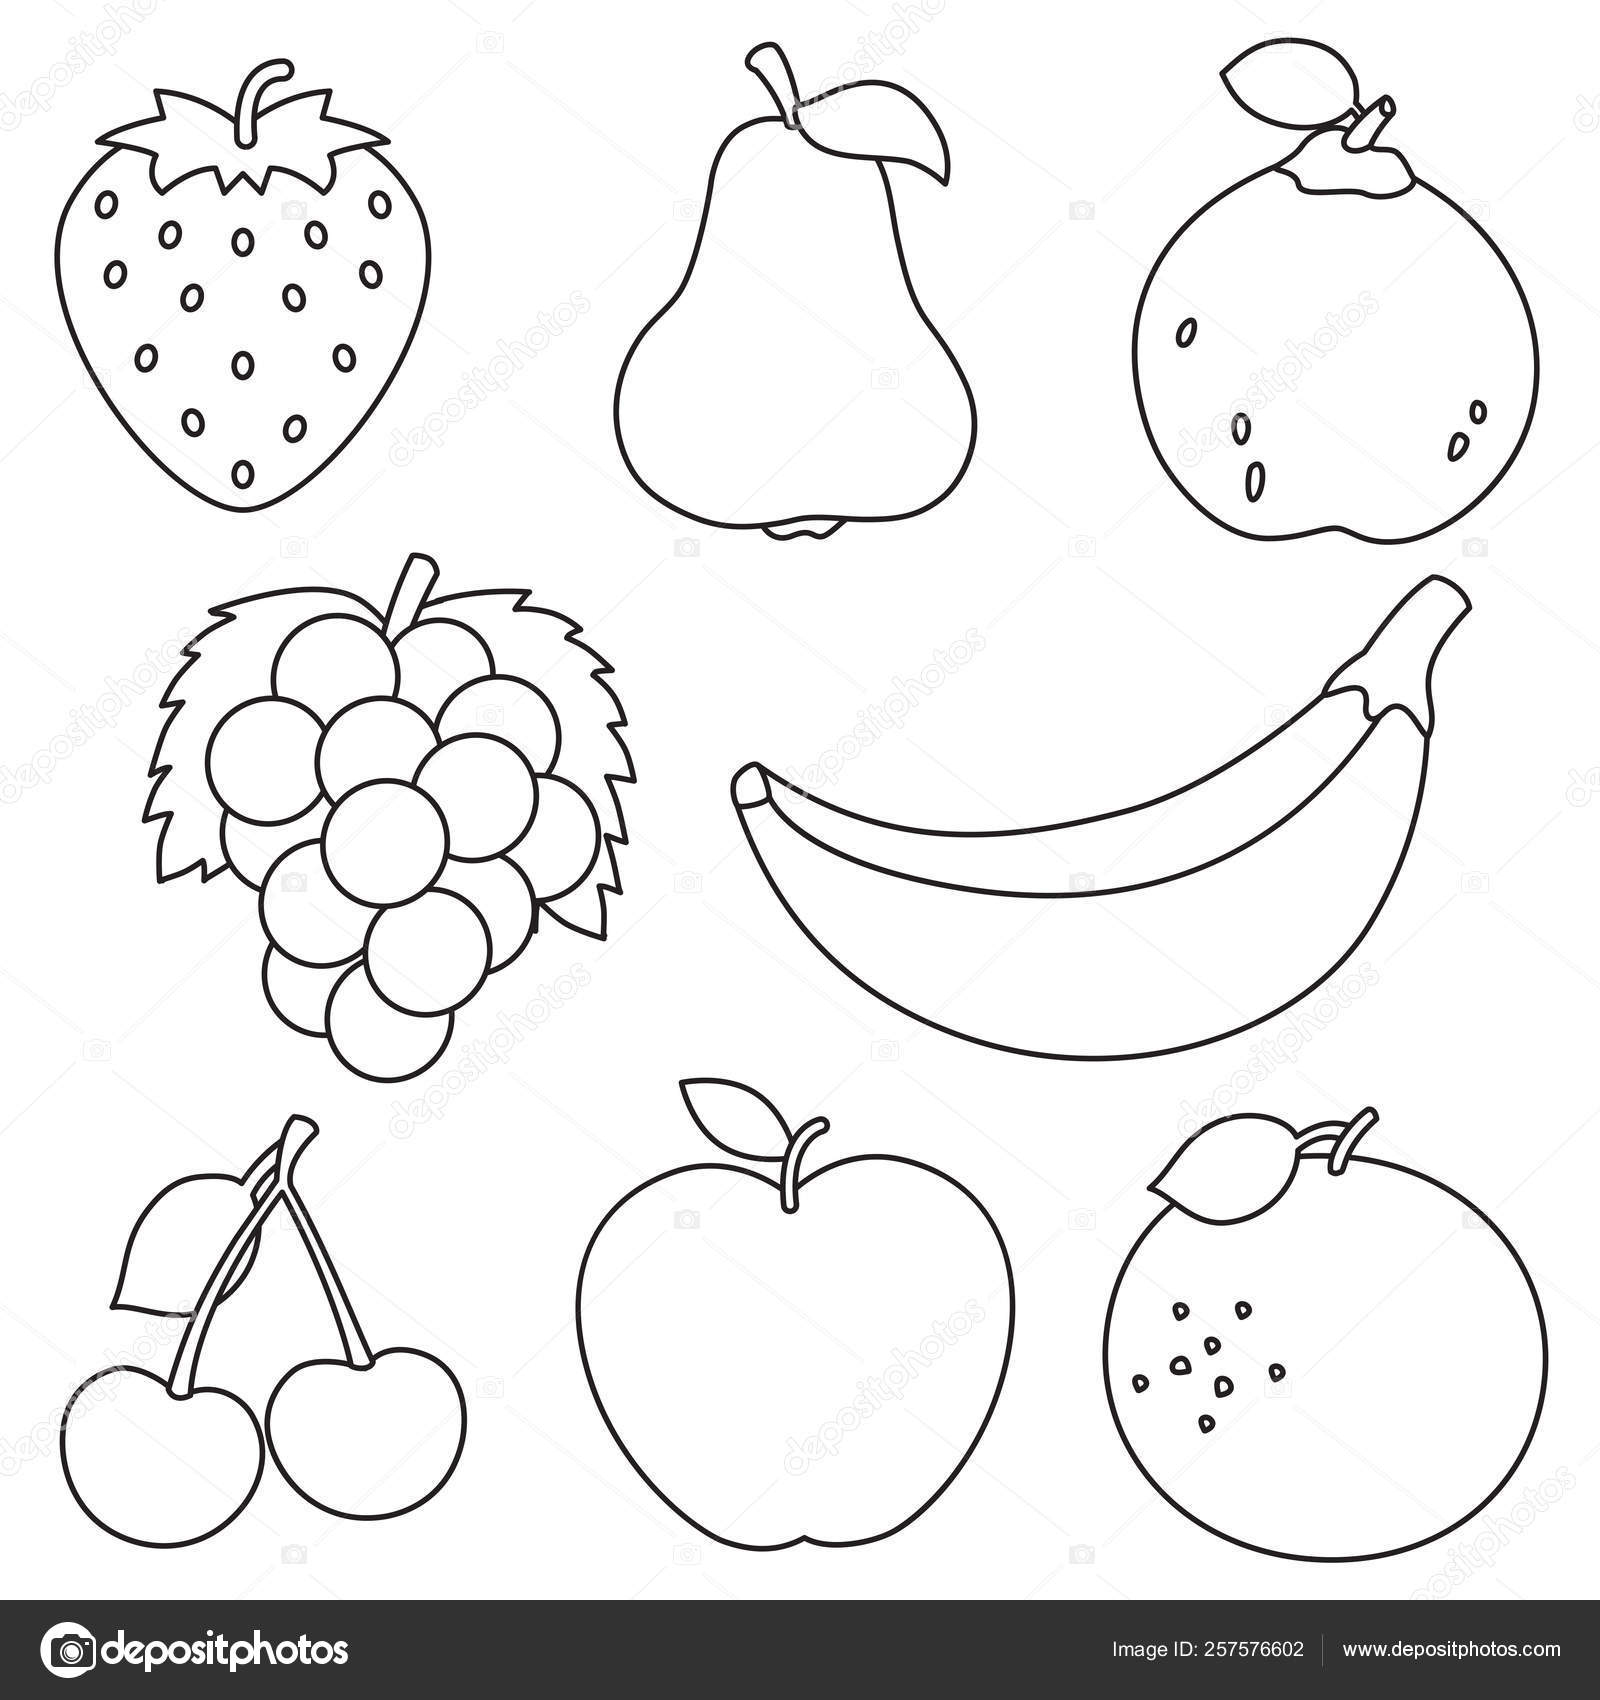 Frutas para colorear imágenes de stock de arte vectorial | Depositphotos